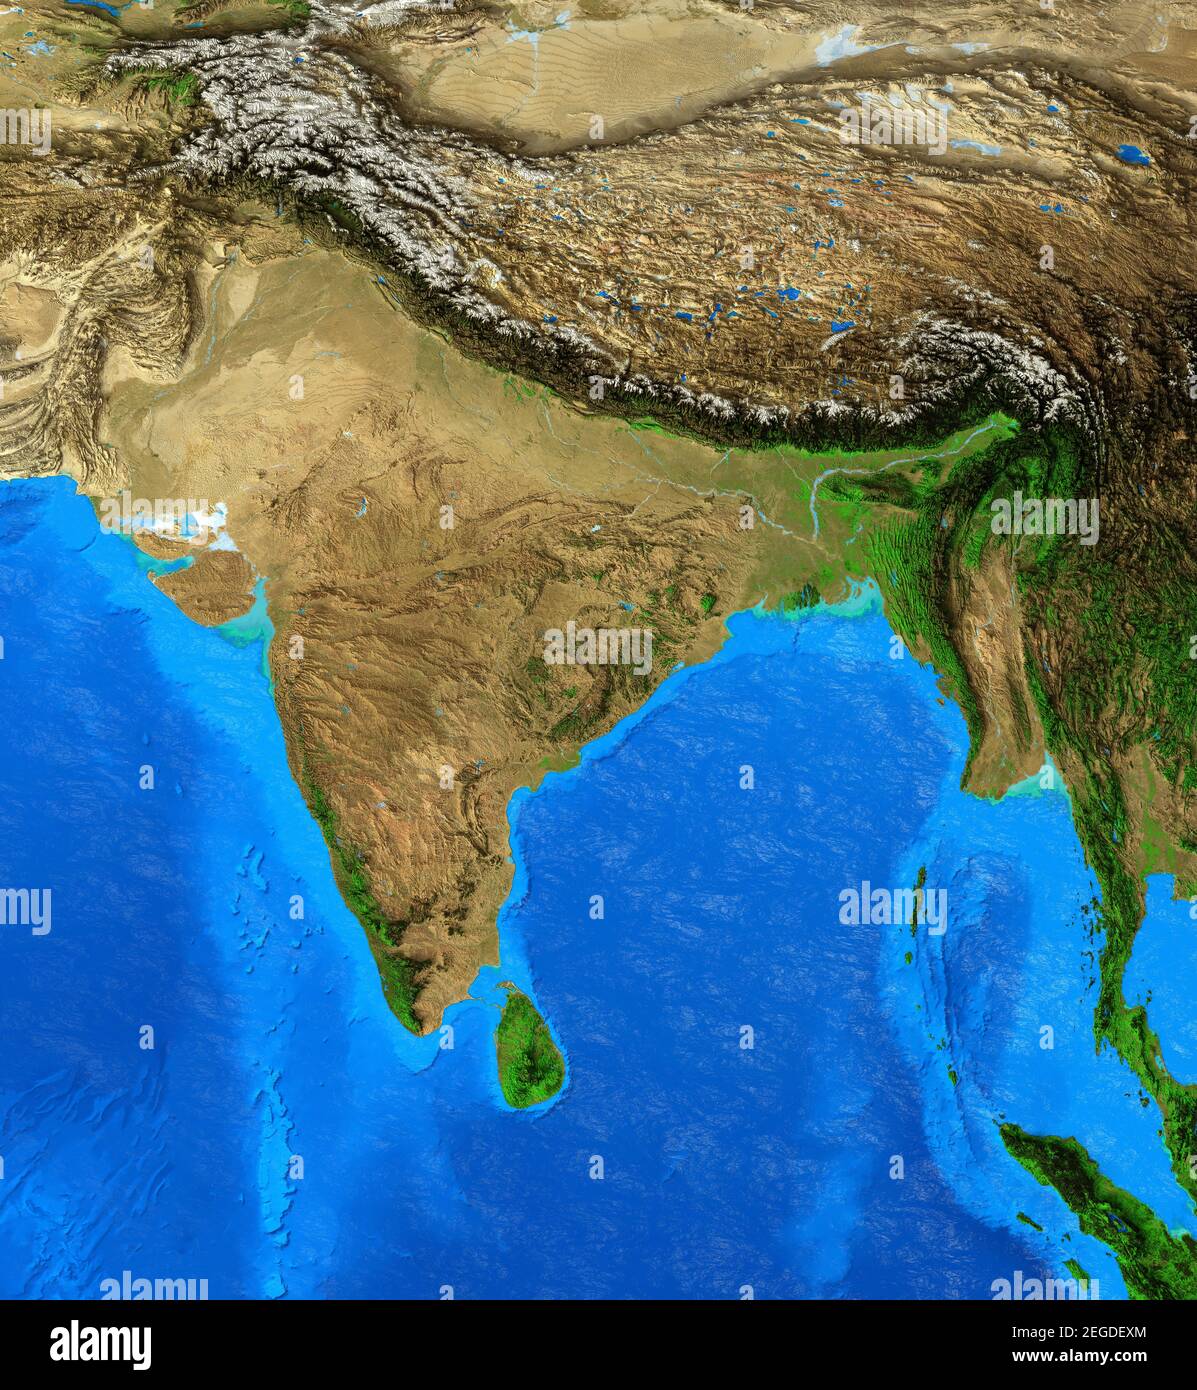 Carte physique de l'Inde et de l'Himalaya. Vue plate détaillée de la planète Terre. Illustration 3D - éléments de cette image fournis par la NASA Banque D'Images